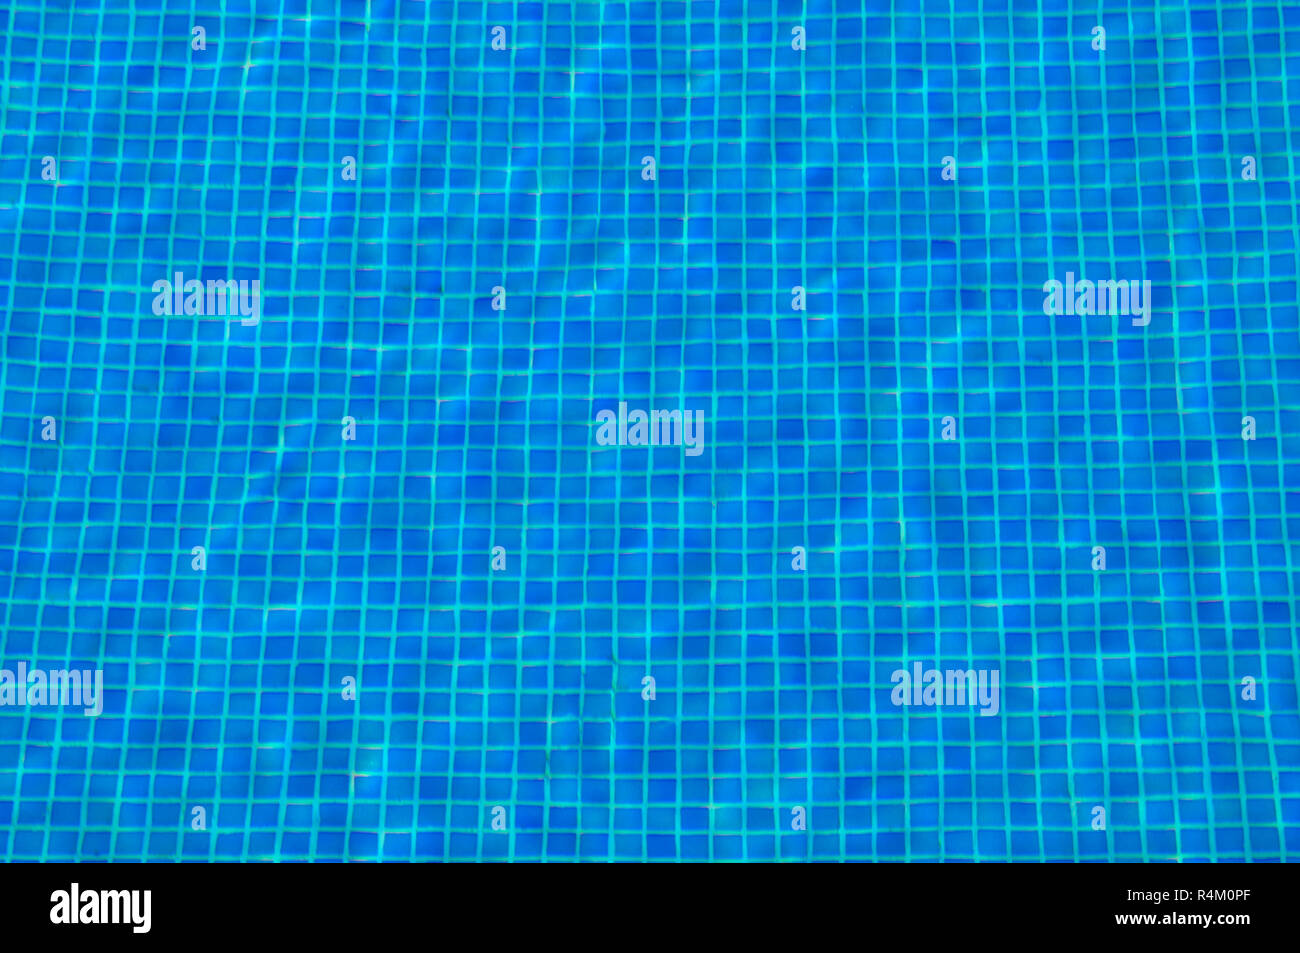 Dettaglio del mosaico di piastrelle del pavimento in una piscina visto attraverso acque torbide. Foto Stock